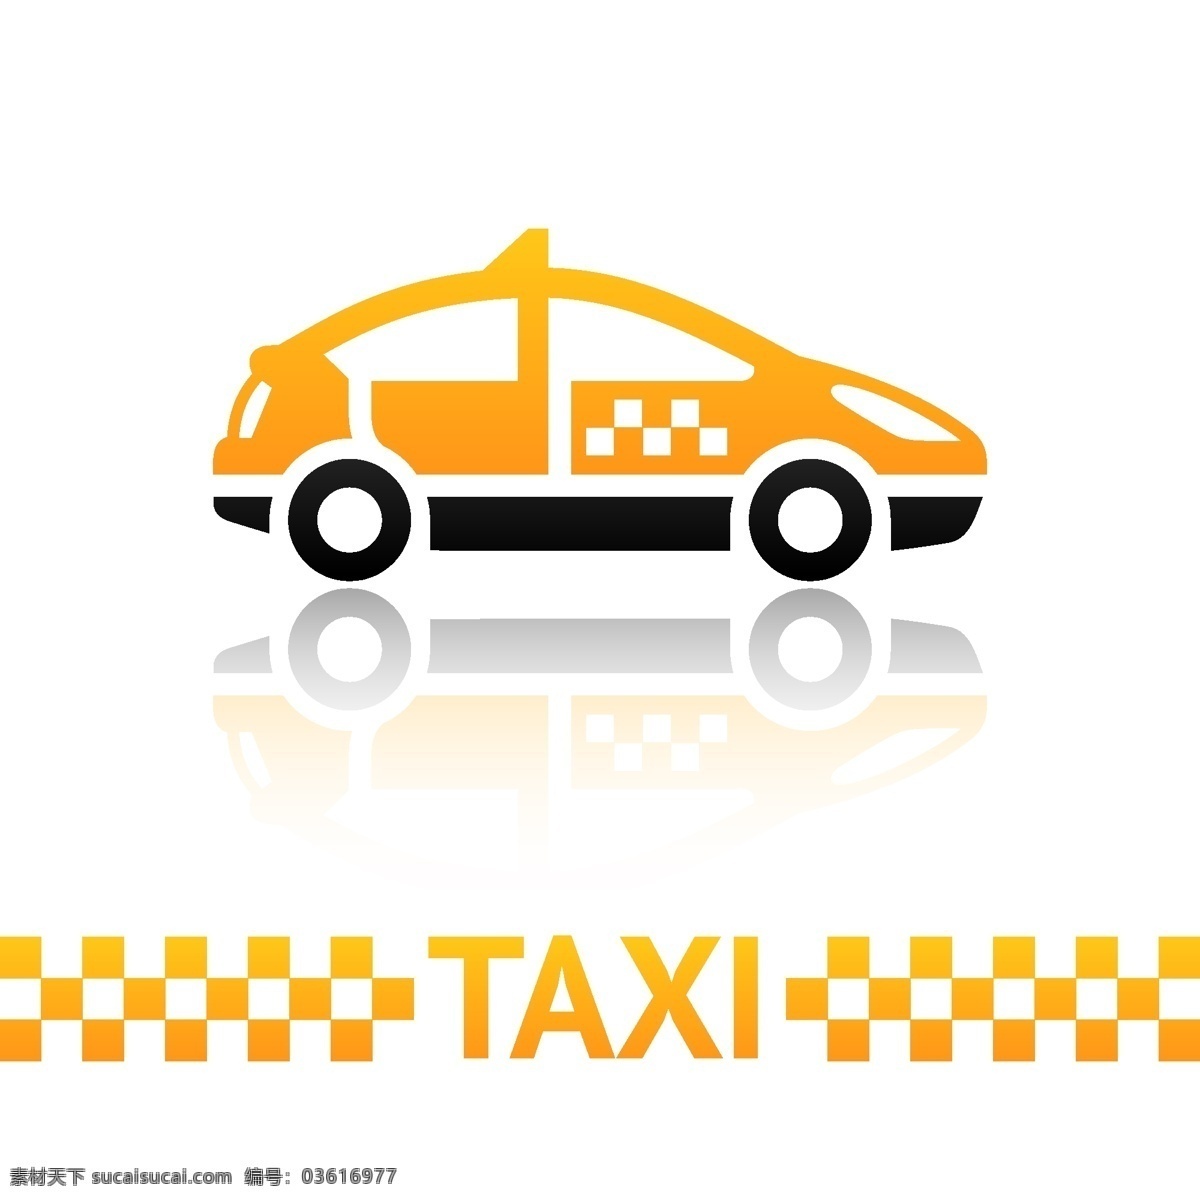 logo 标签 标识标志图标 标志 出租车 黑色 黄色 路标 图标 小图标 矢量 模板下载 taxi 打的 psd源文件